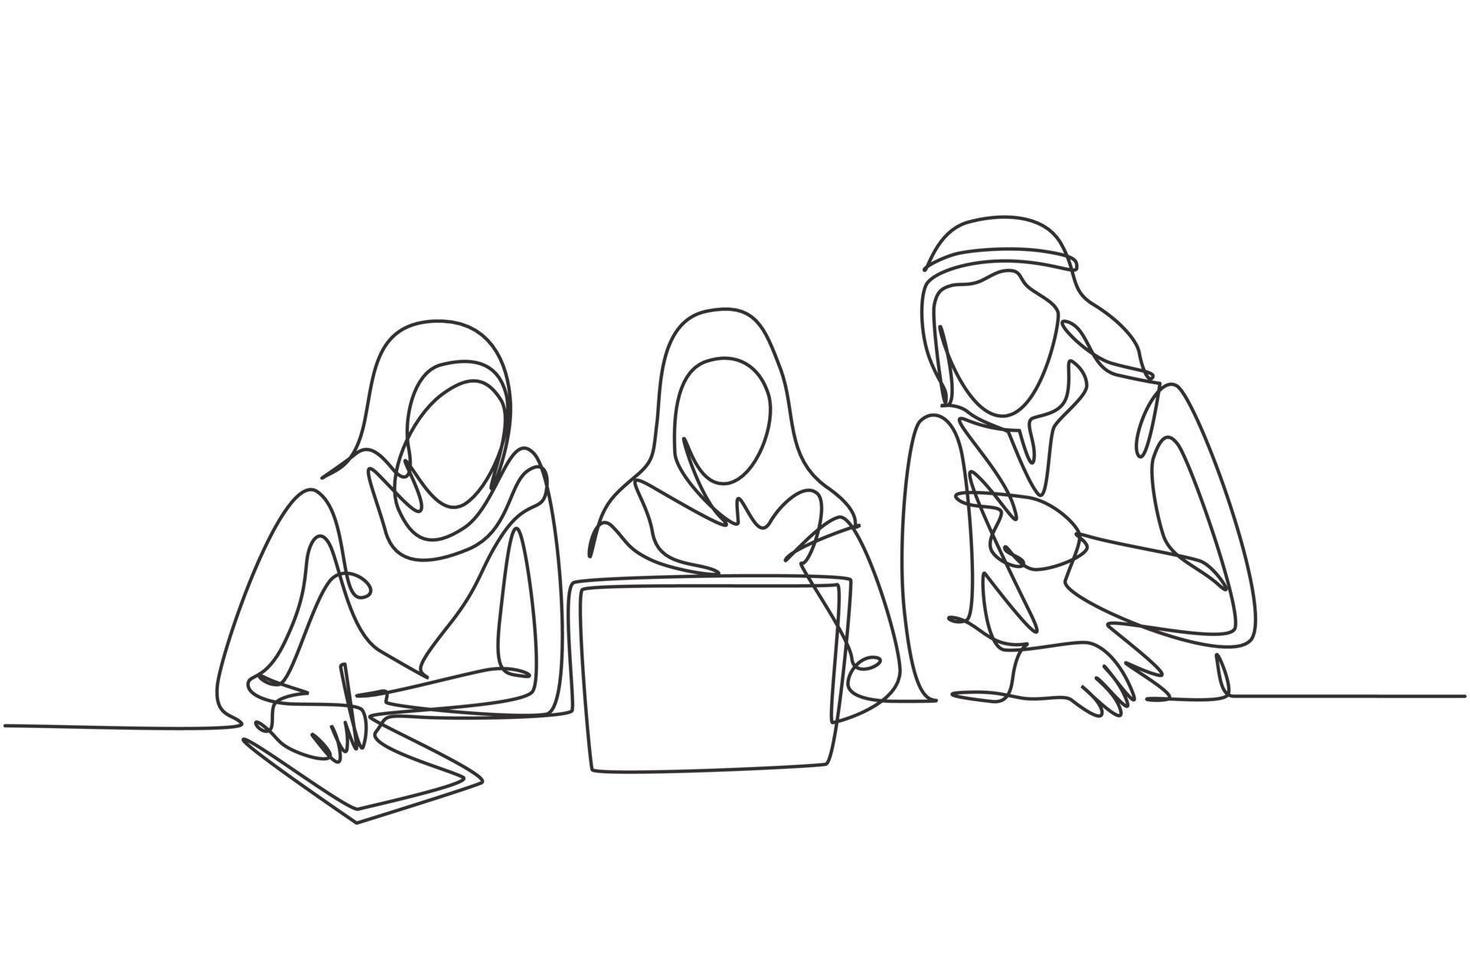 un seul dessin au trait de jeunes employés musulmans masculins et féminins prenant des heures supplémentaires pour terminer les travaux. hijab en tissu d'arabie saoudite, kandora, foulard, ghutra. illustration vectorielle de ligne continue dessiner conception vecteur